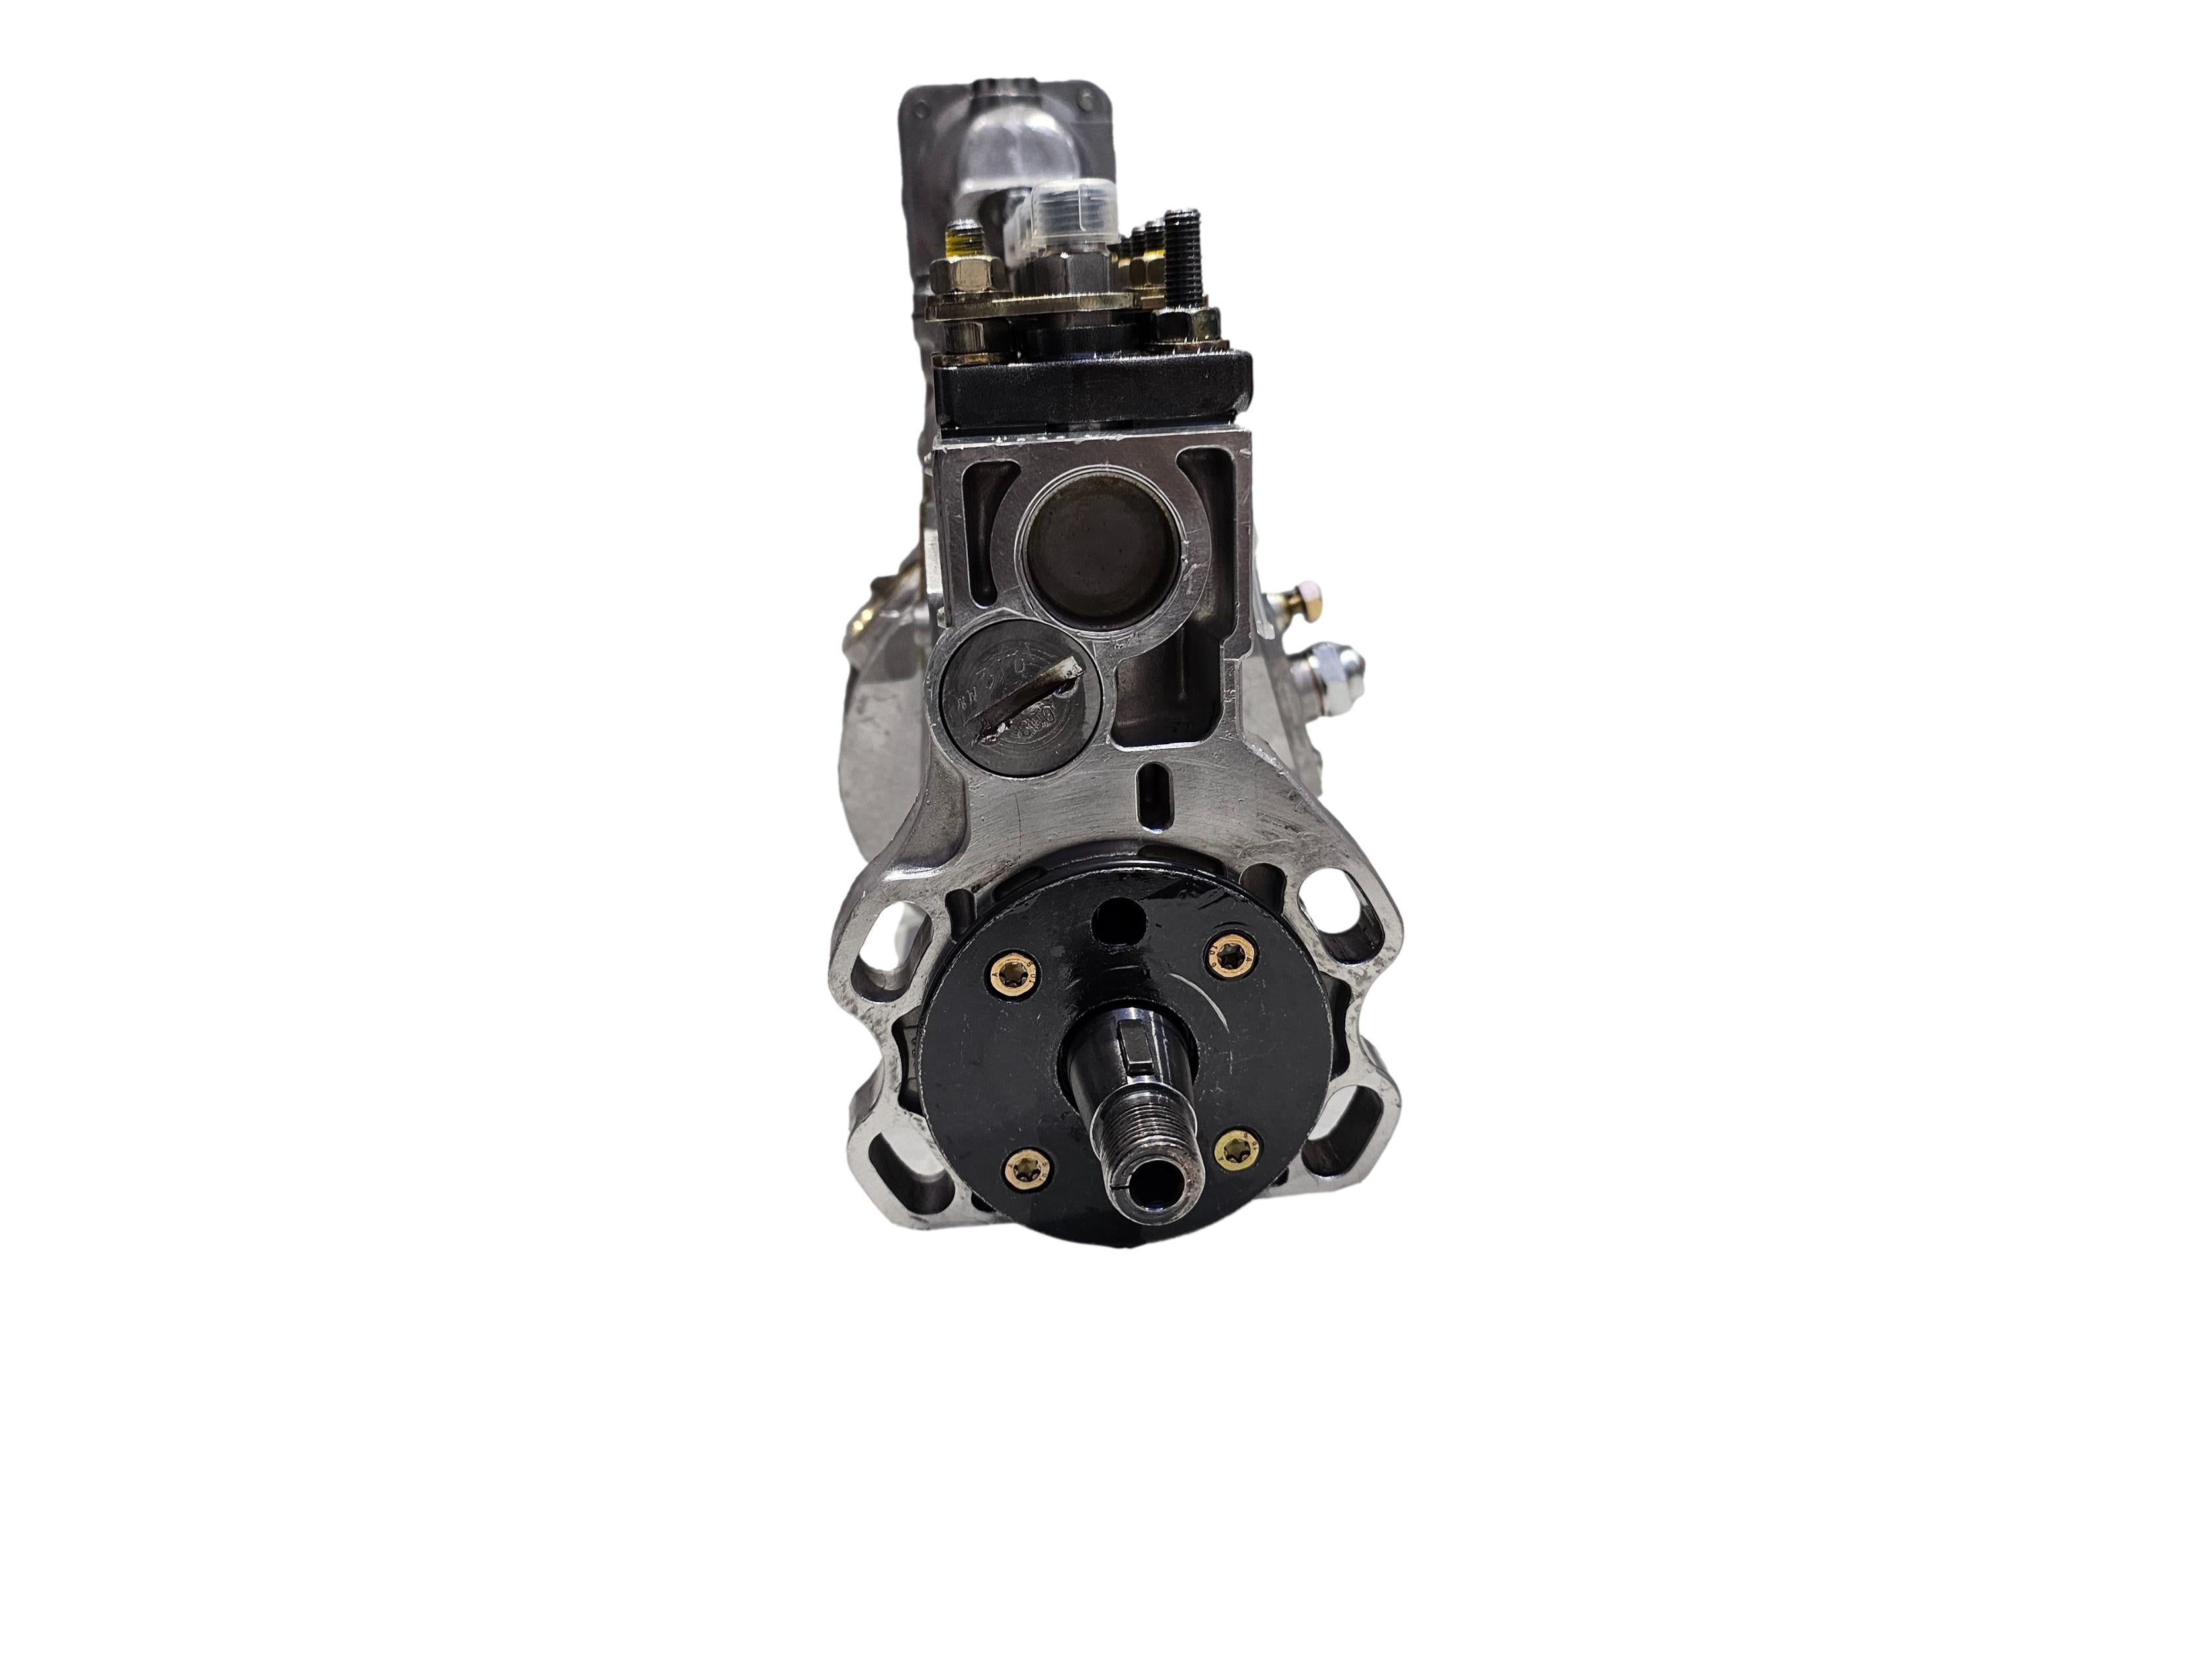 BOSCH Inline Diesel Fuel Injection Pump 0403446250 Perkins Phaser